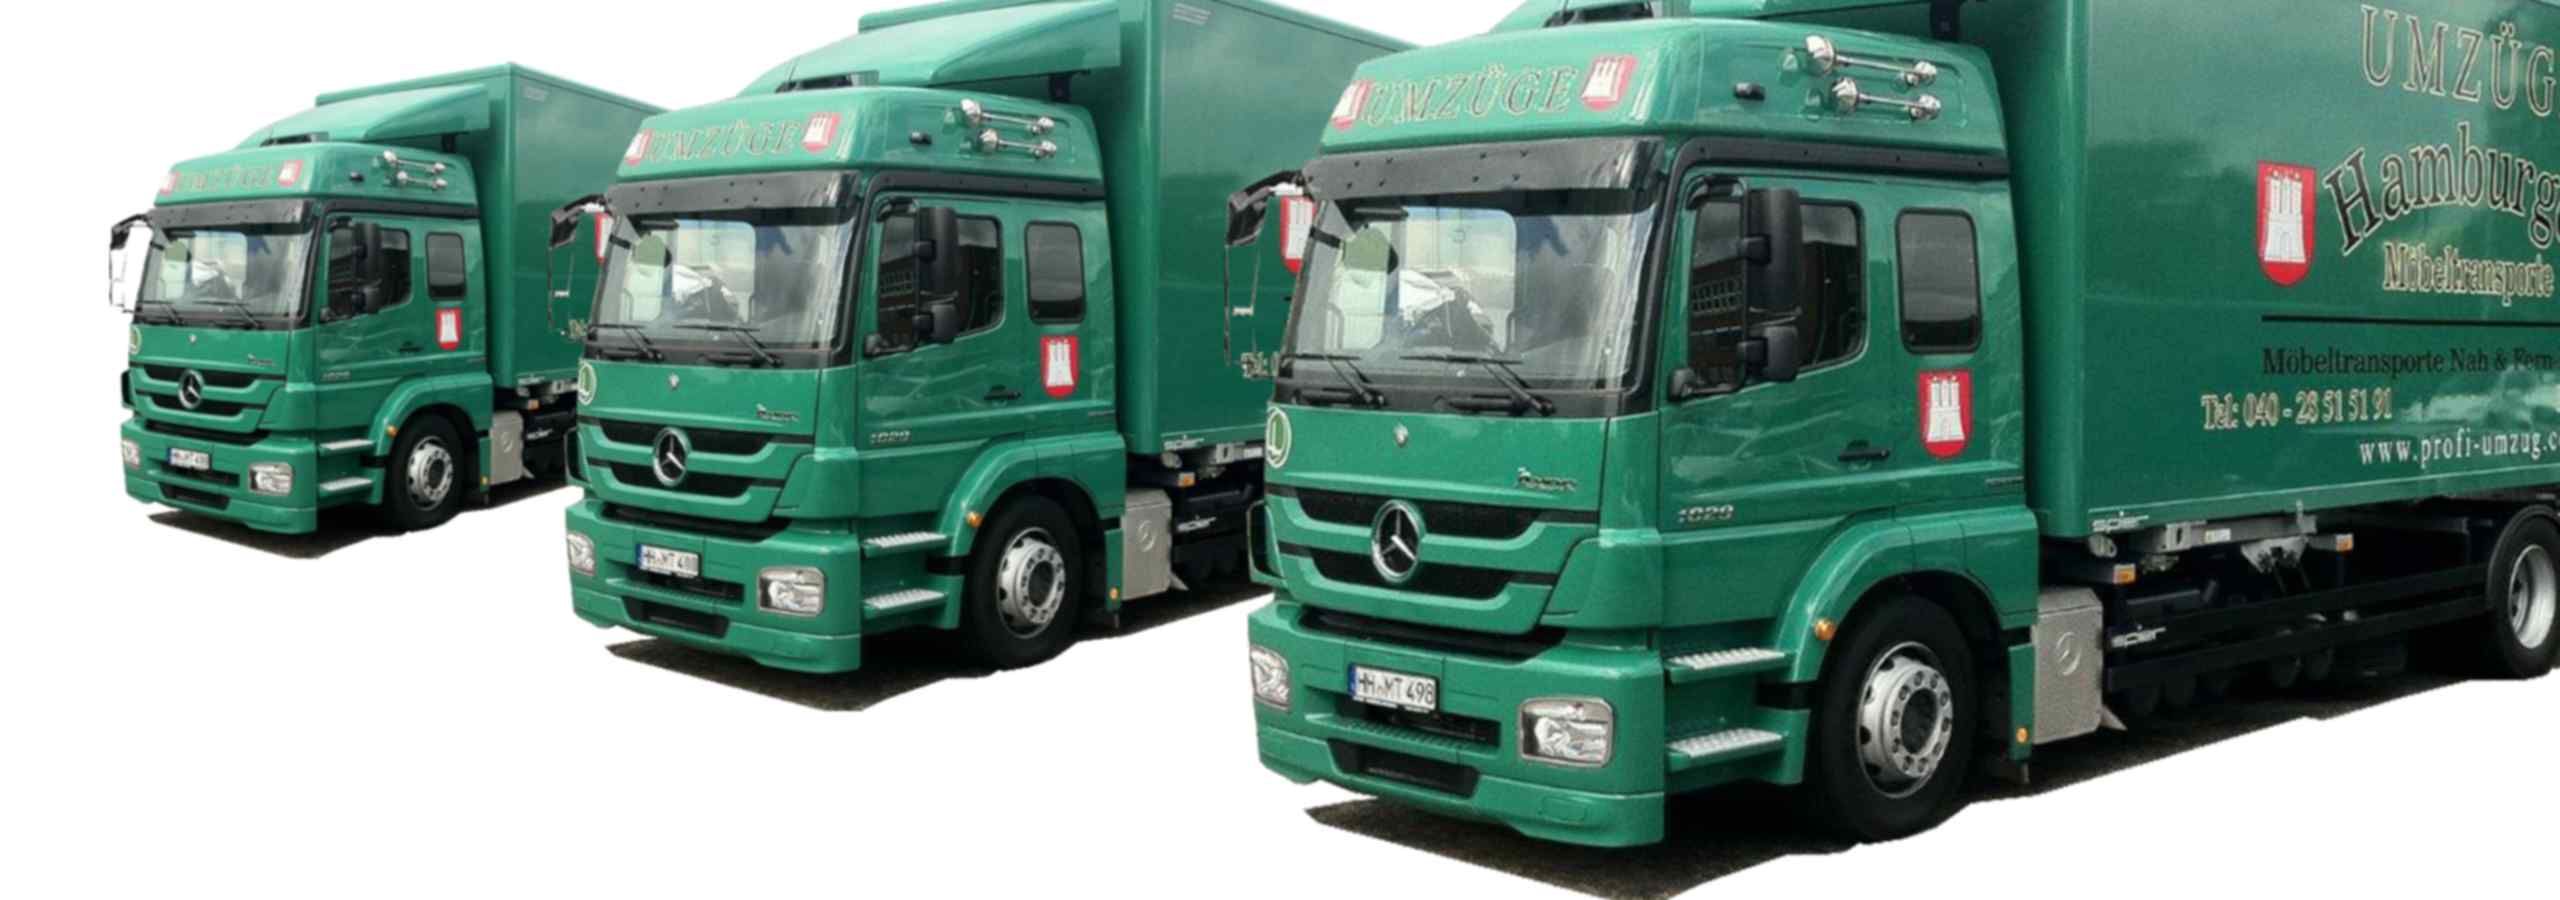 Drei LKWs von Hamburger Möbeltransporte nebeneinander